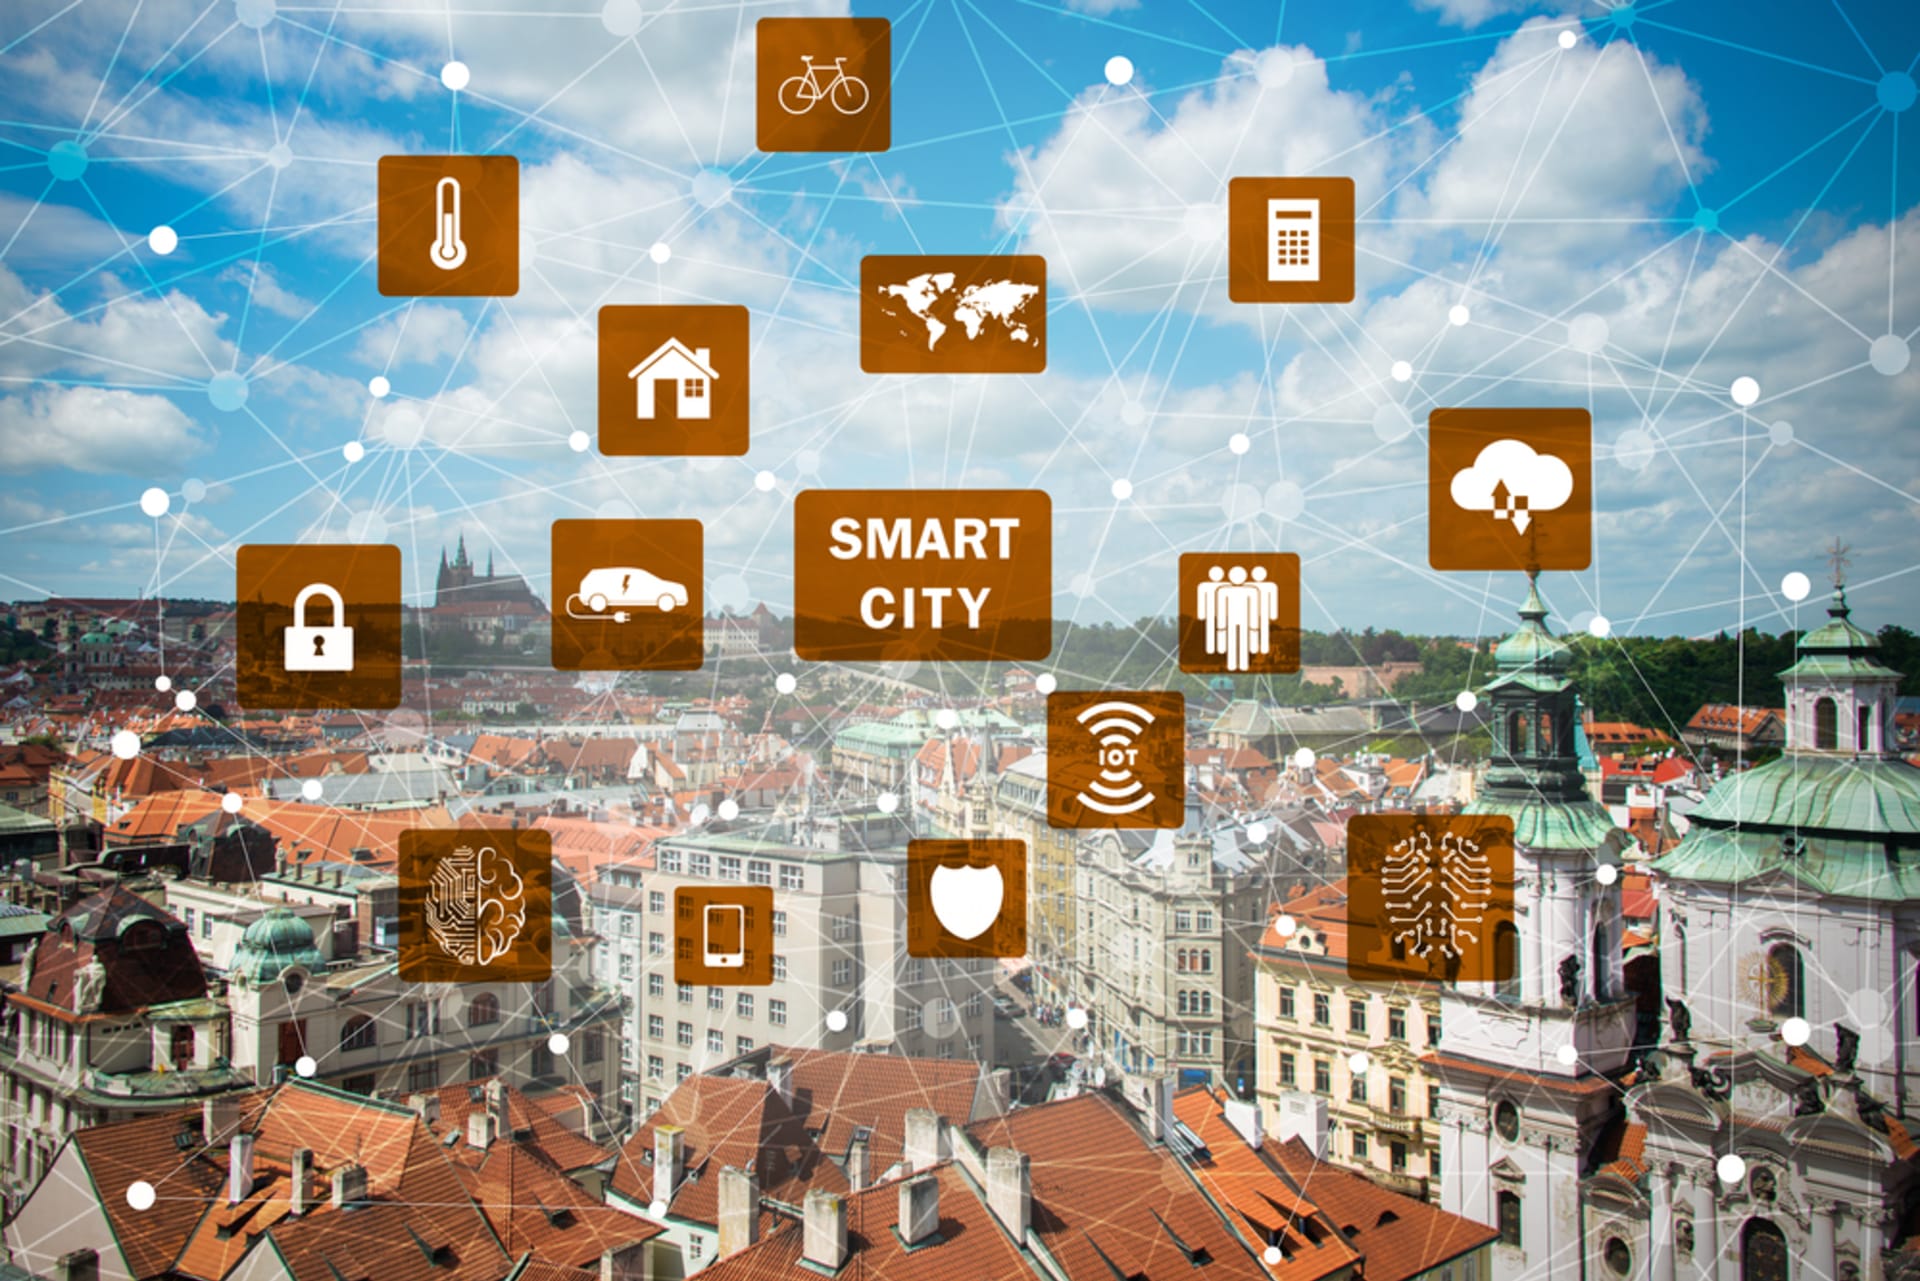 V Praze už lze některé prvky smart city konceptu využívat. Například Portál Pražana.